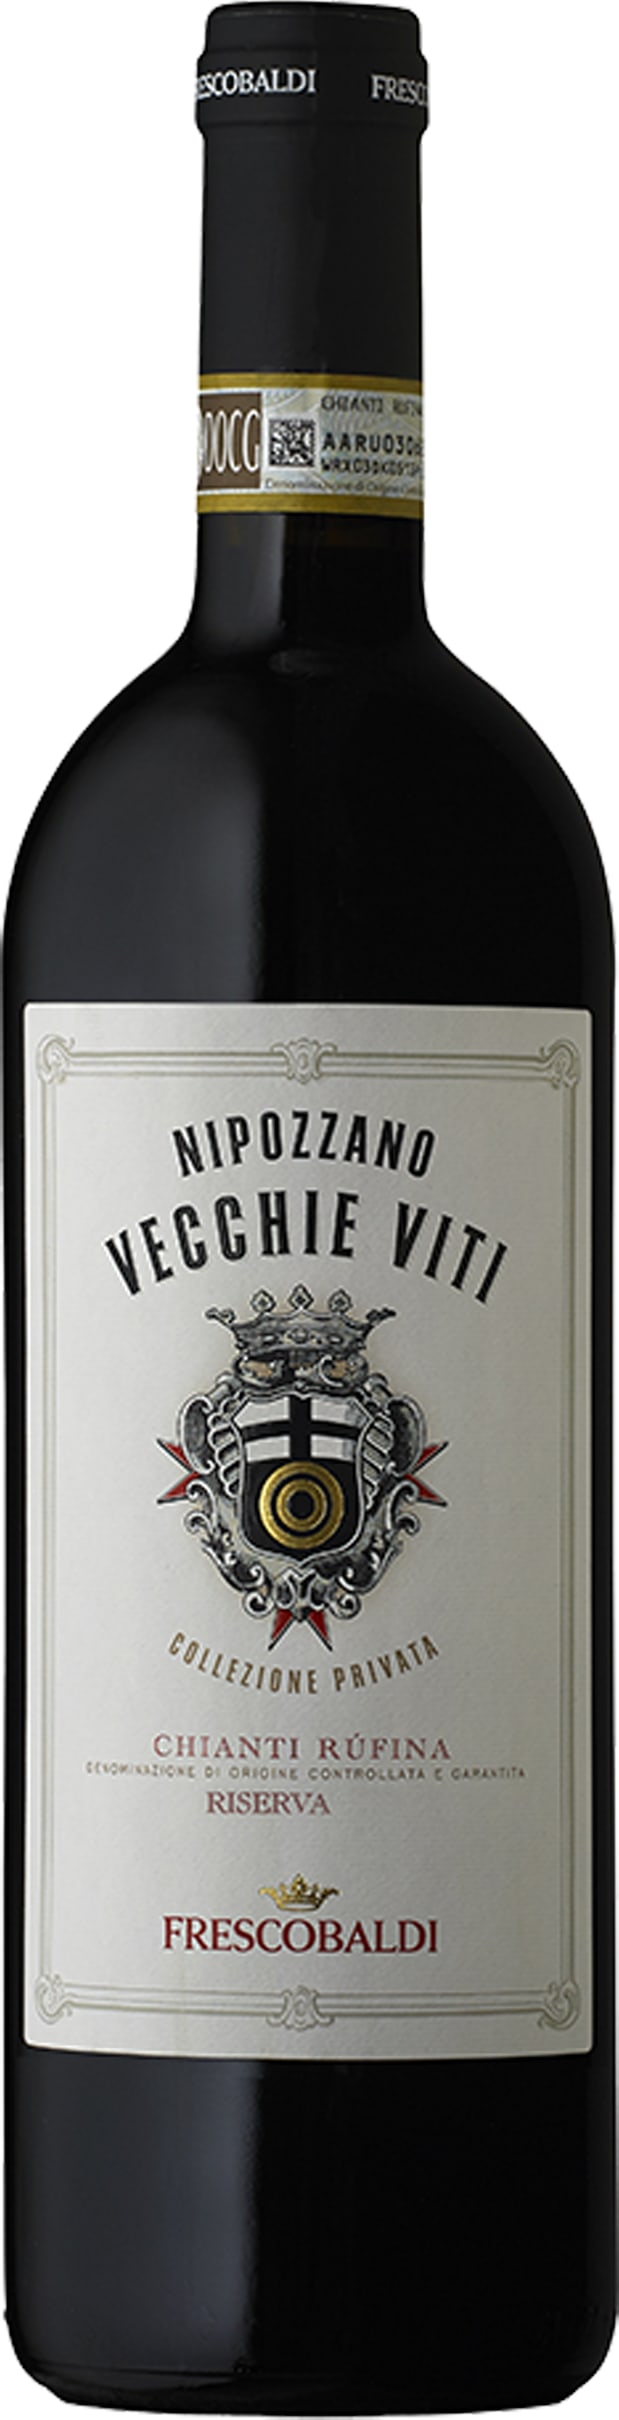 Nipozzano Vecchie Viti 18 Frescobaldi 300cl - Buy Frescobaldi Wines from GREAT WINES DIRECT wine shop